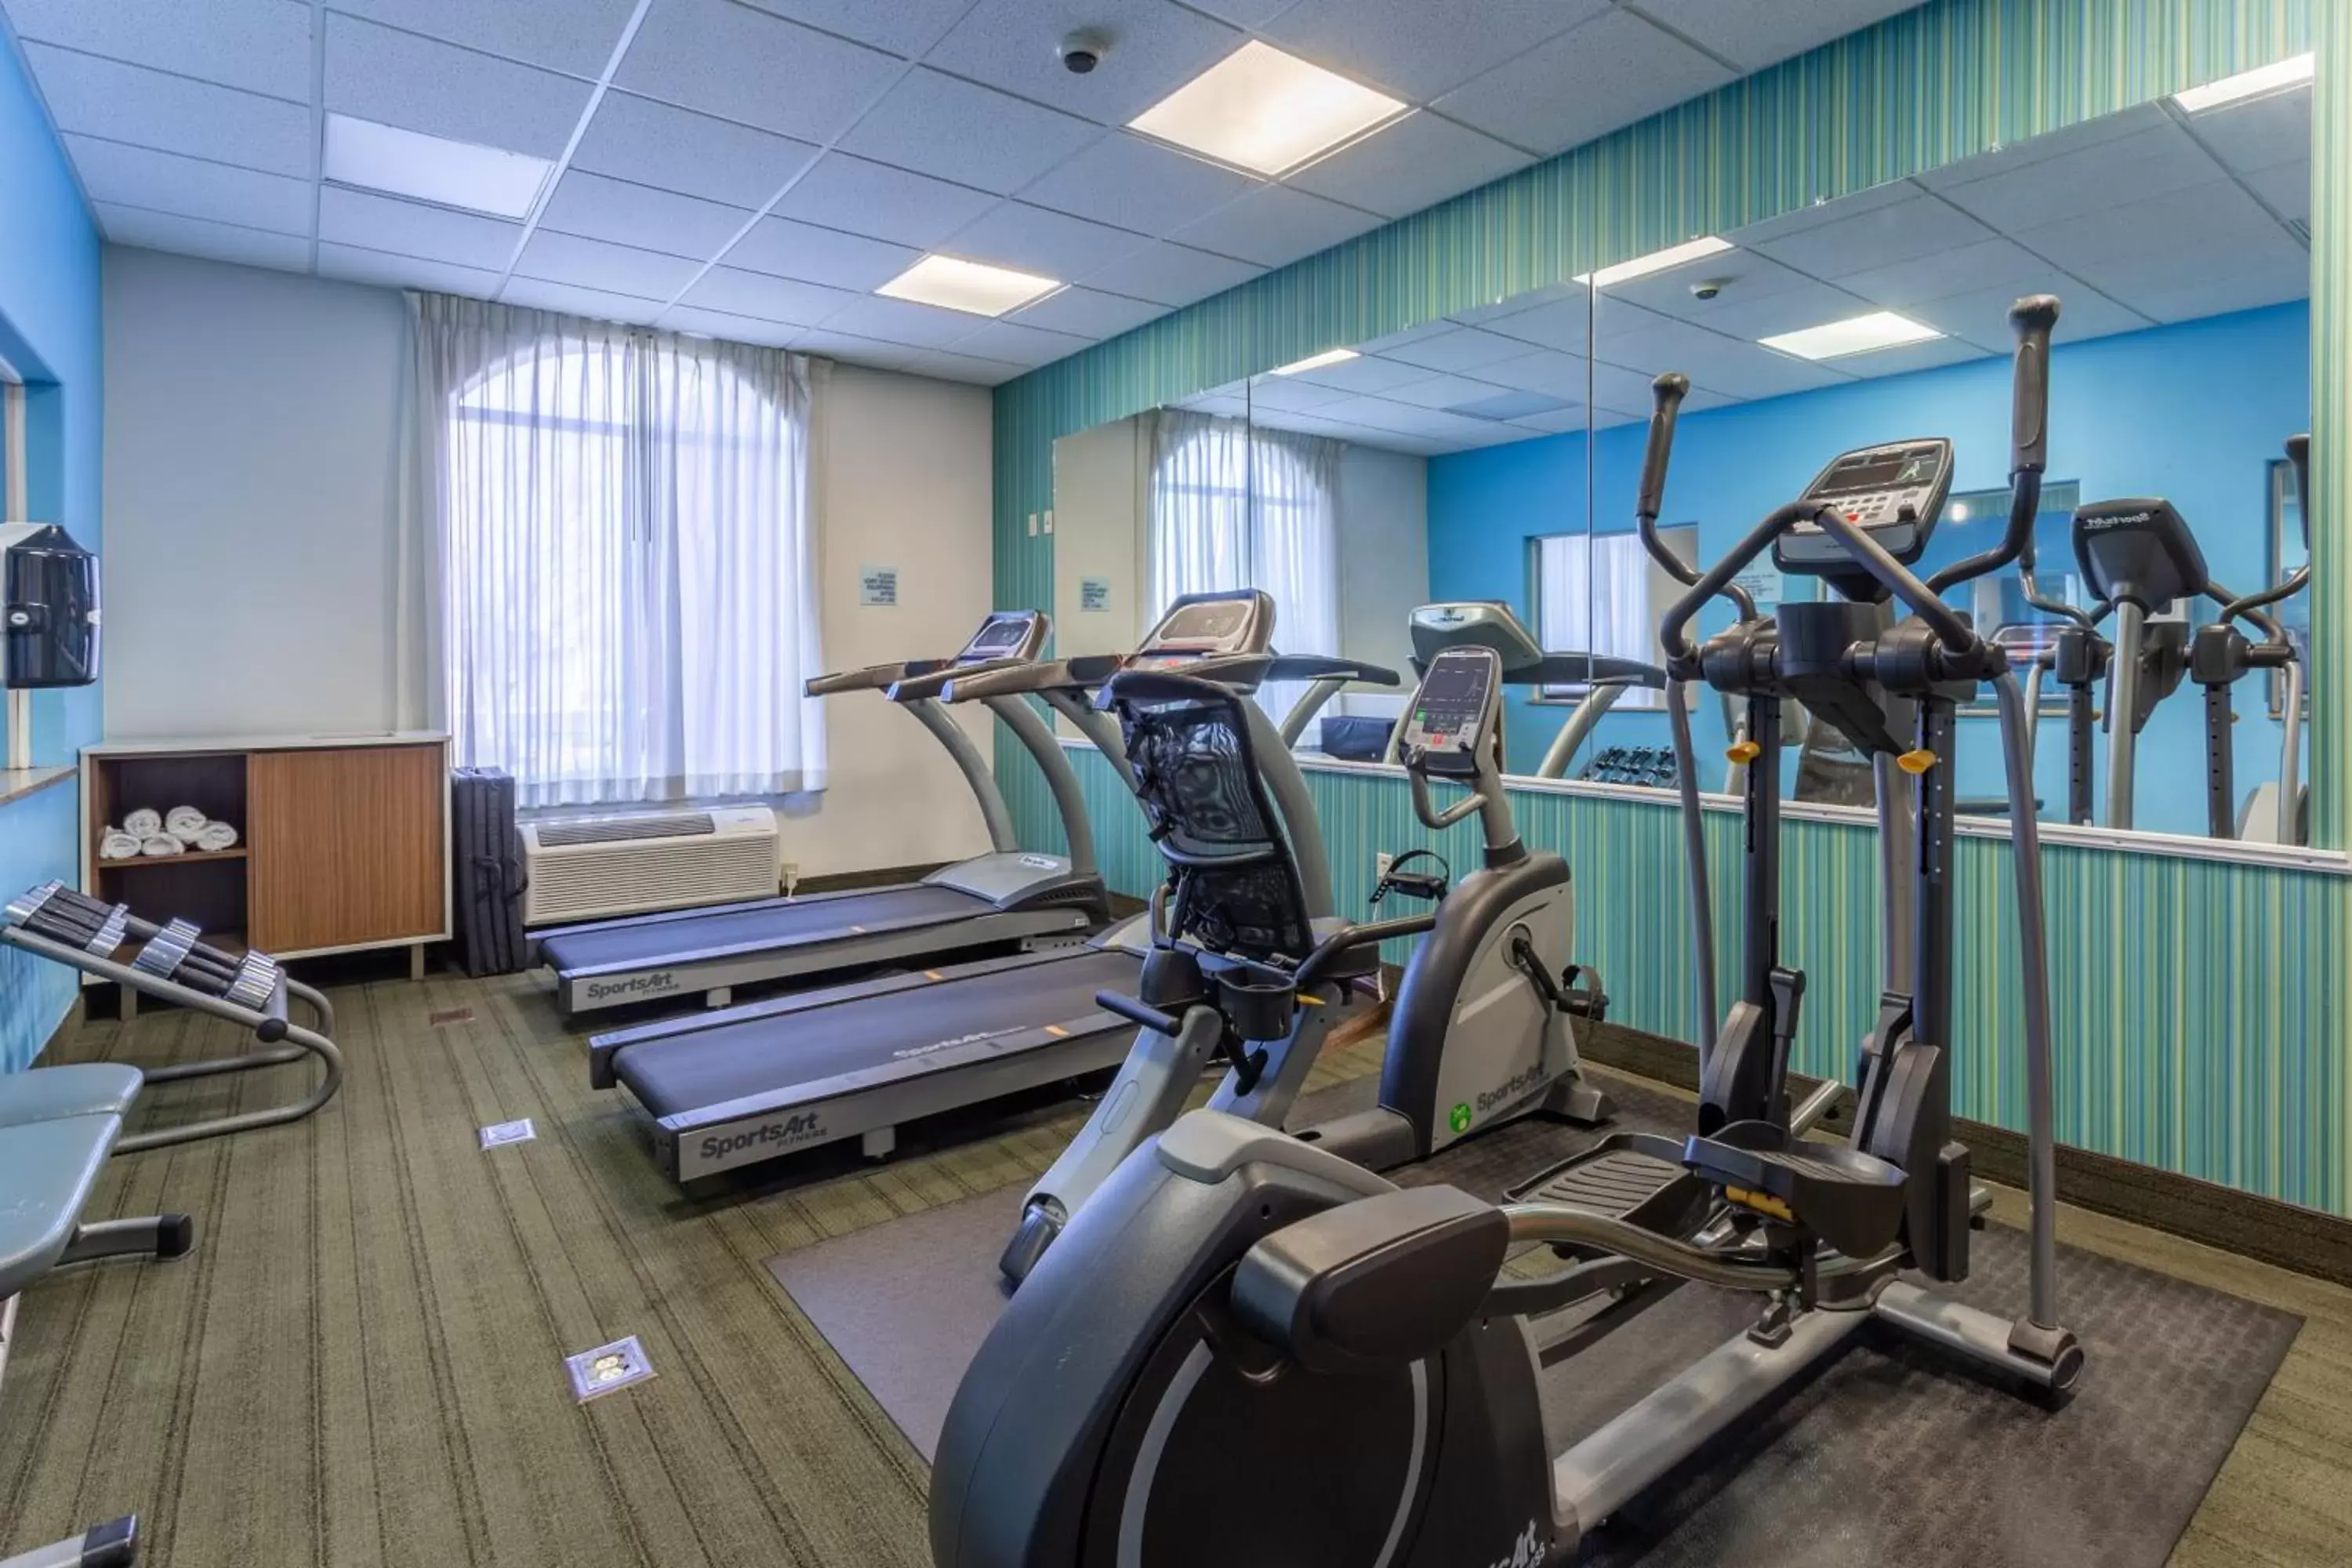 Fitness centre/facilities, Fitness Center/Facilities in Holiday Inn Express Rockford-Loves Park, an IHG Hotel